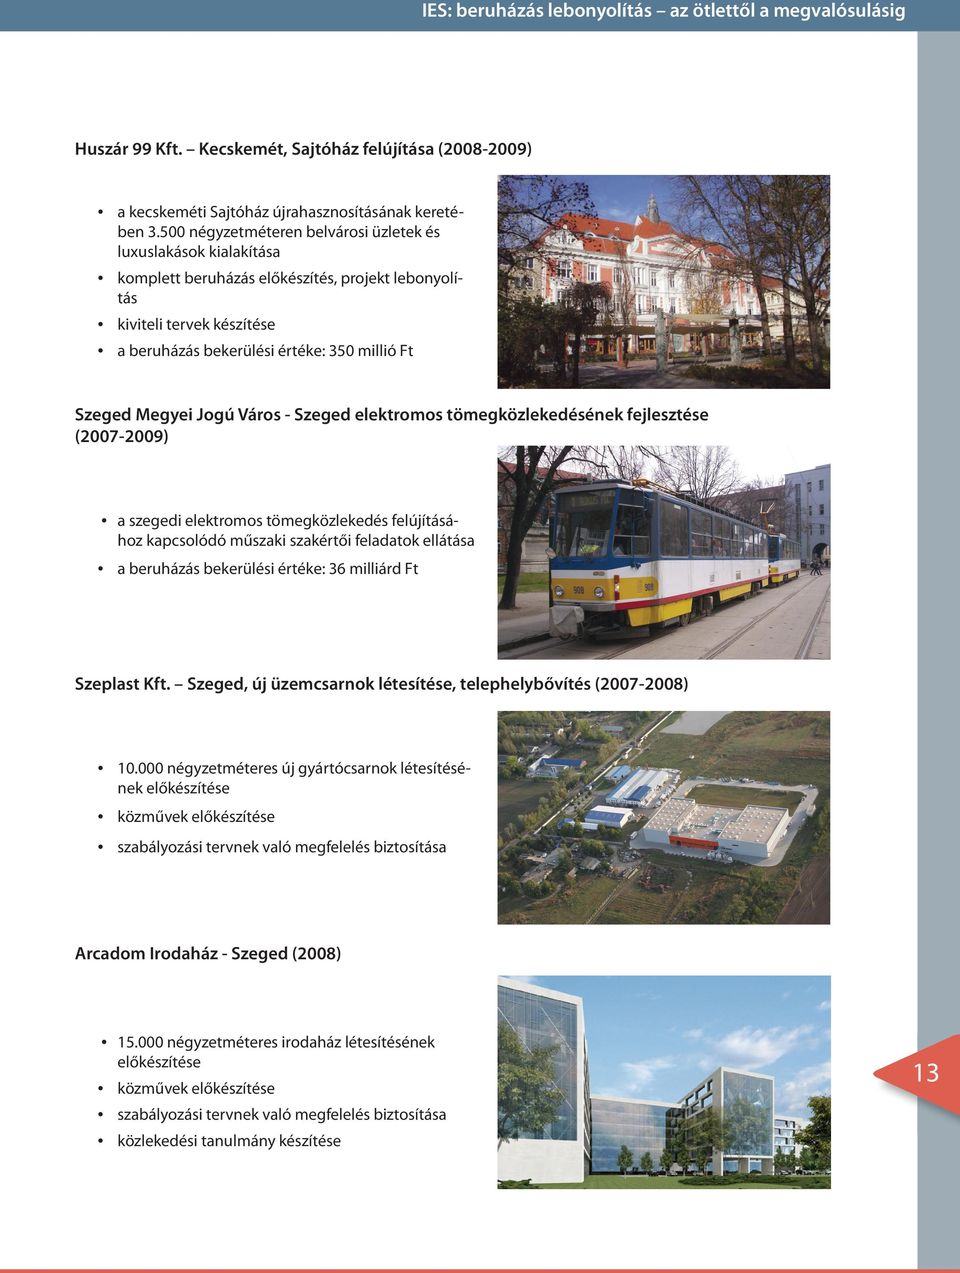 Megyei Jogú Város - Szeged elektromos tömegközlekedésének fejlesztése (2007-2009) a szegedi elektromos tömegközlekedés felújításá- hoz kapcsolódó műszaki szakértői feladatok ellátása a beruházás